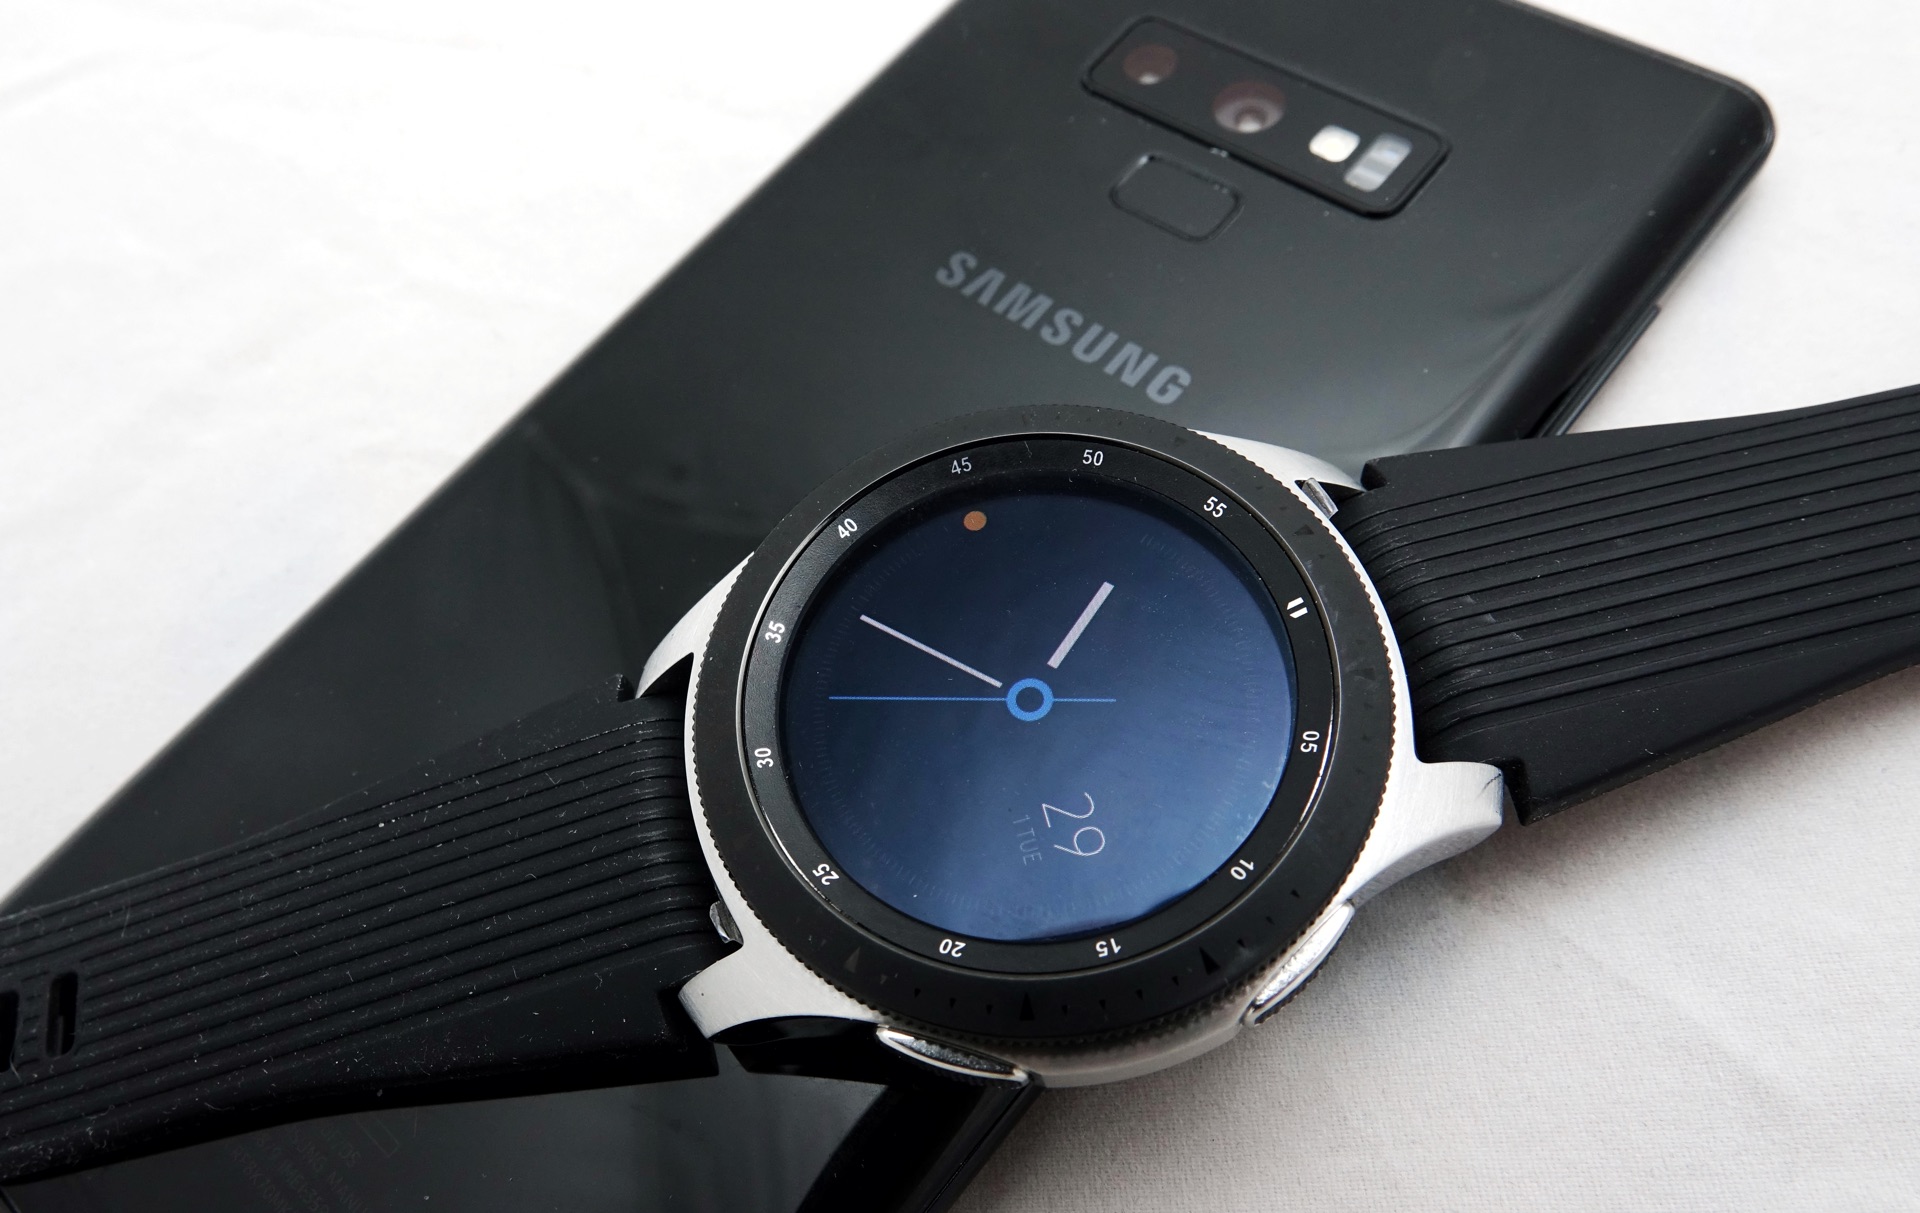 Samsung galaxy watch r930. Samsung Galaxy watch 46mm. Samsung Galaxy watch SM-r800. Galaxy watch 46mm r800. Samsung Galaxy watch 4 45mm.